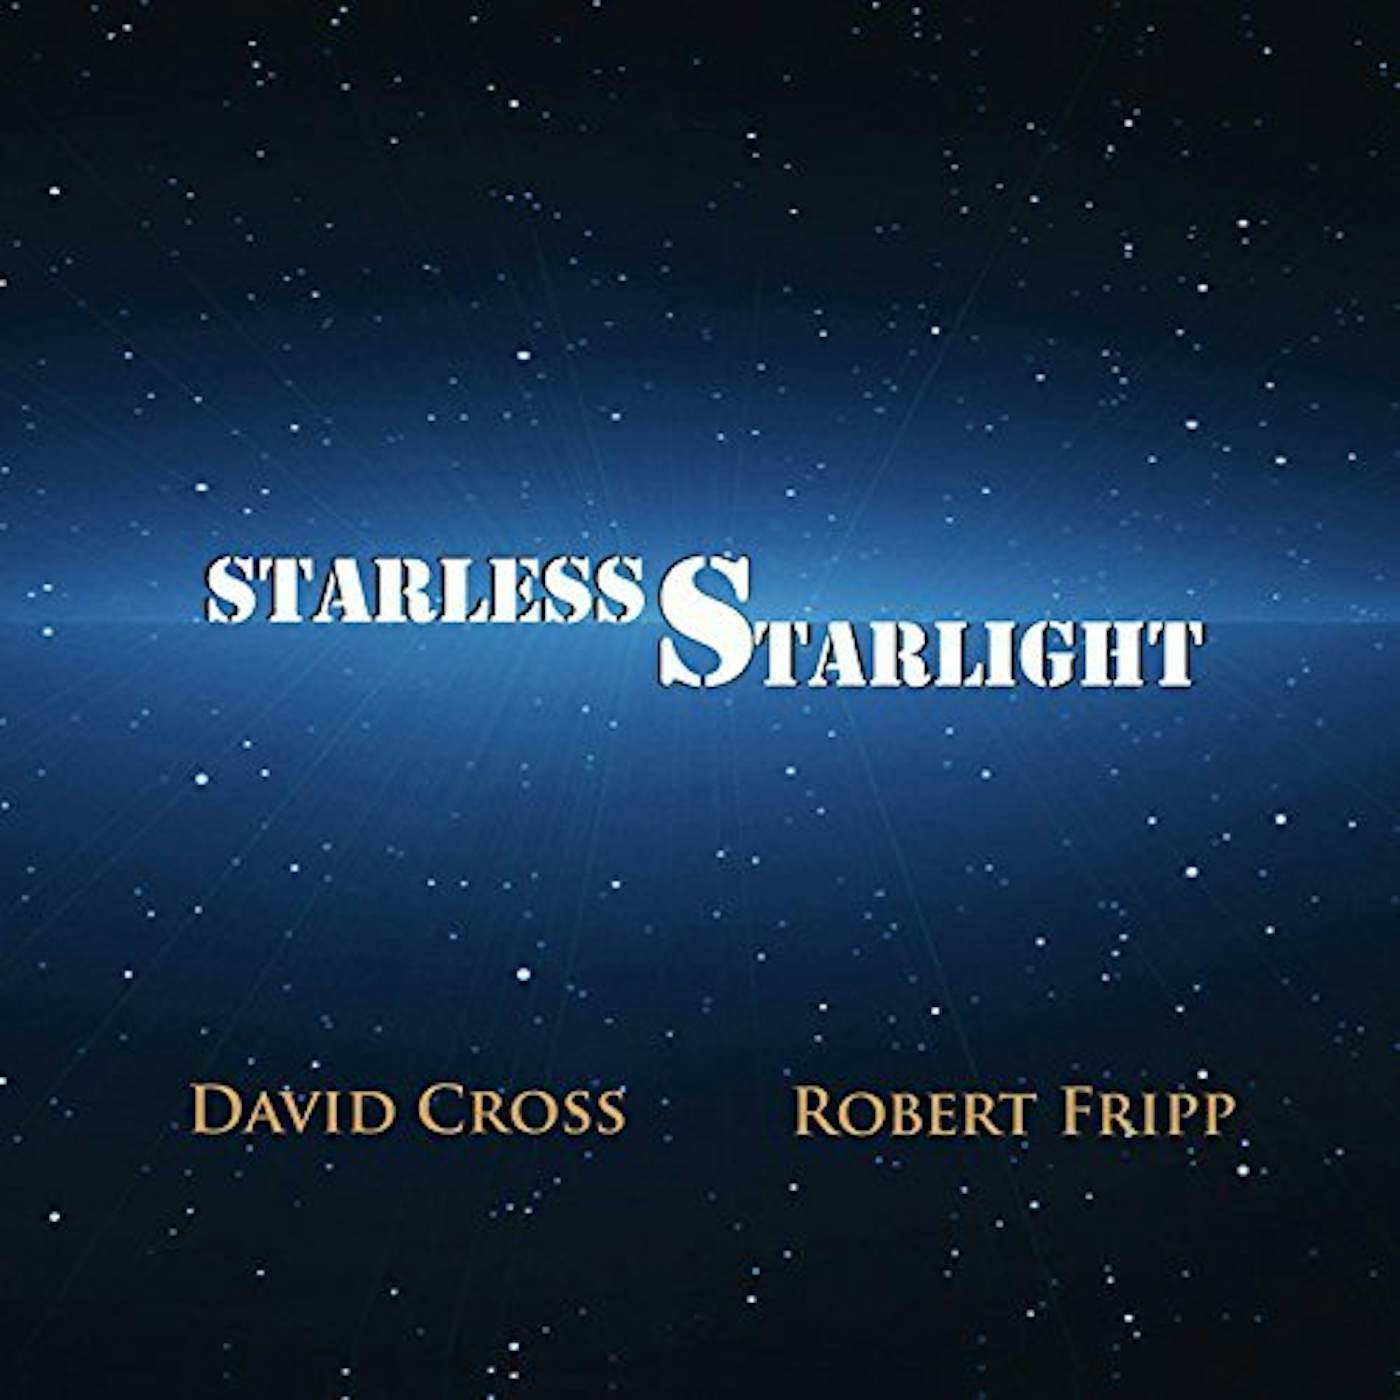 David Cross STARLESS STARLIGHT CD